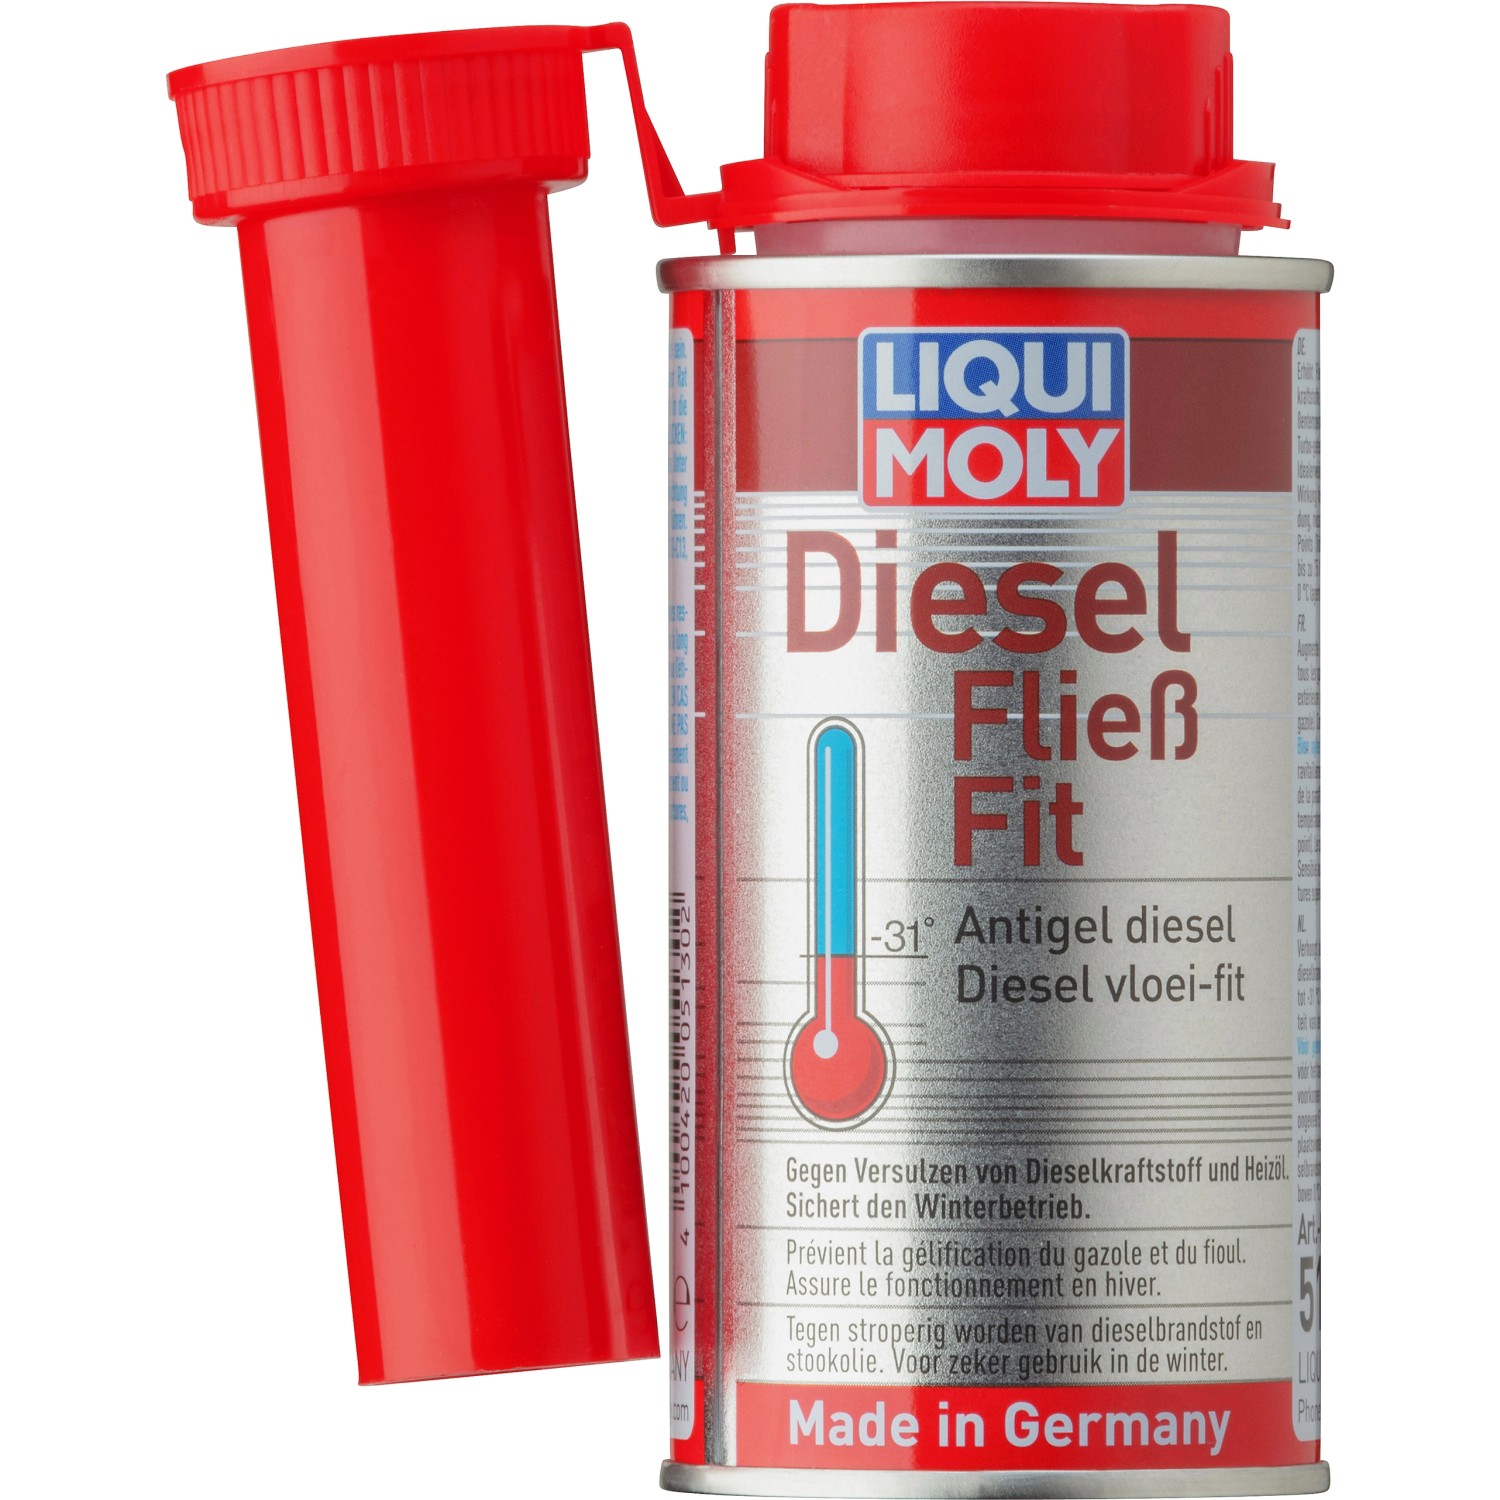 Liqui Moly Super-Diesel-Additiv 250 ml kaufen bei OBI